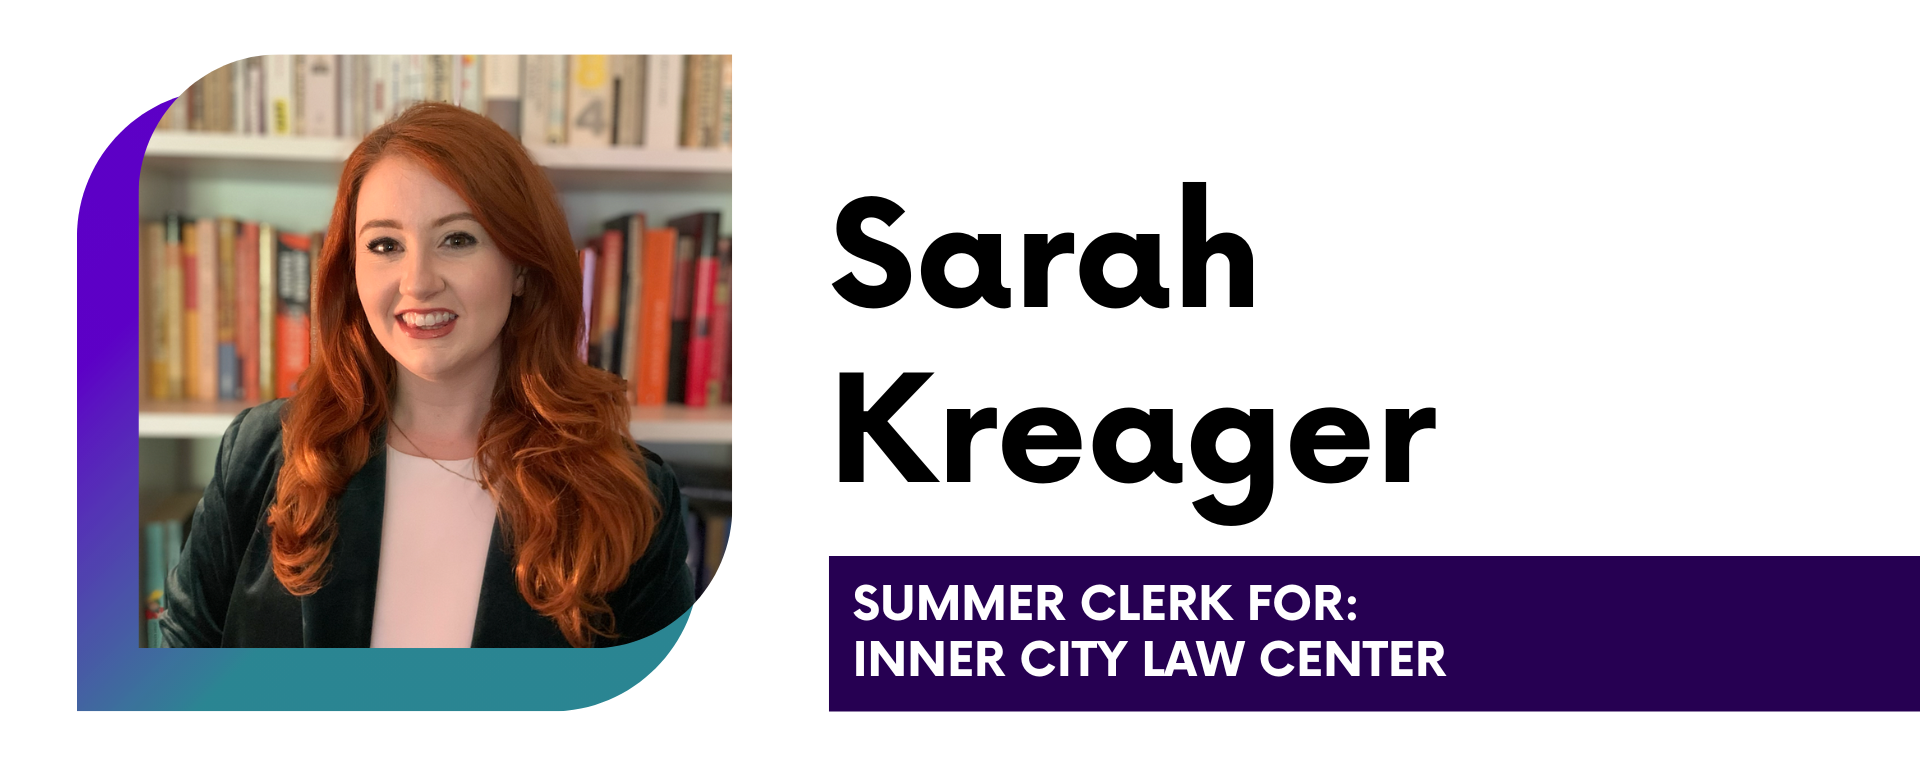 Sarah Kreager Summer Clerk for: Inner City Law Center